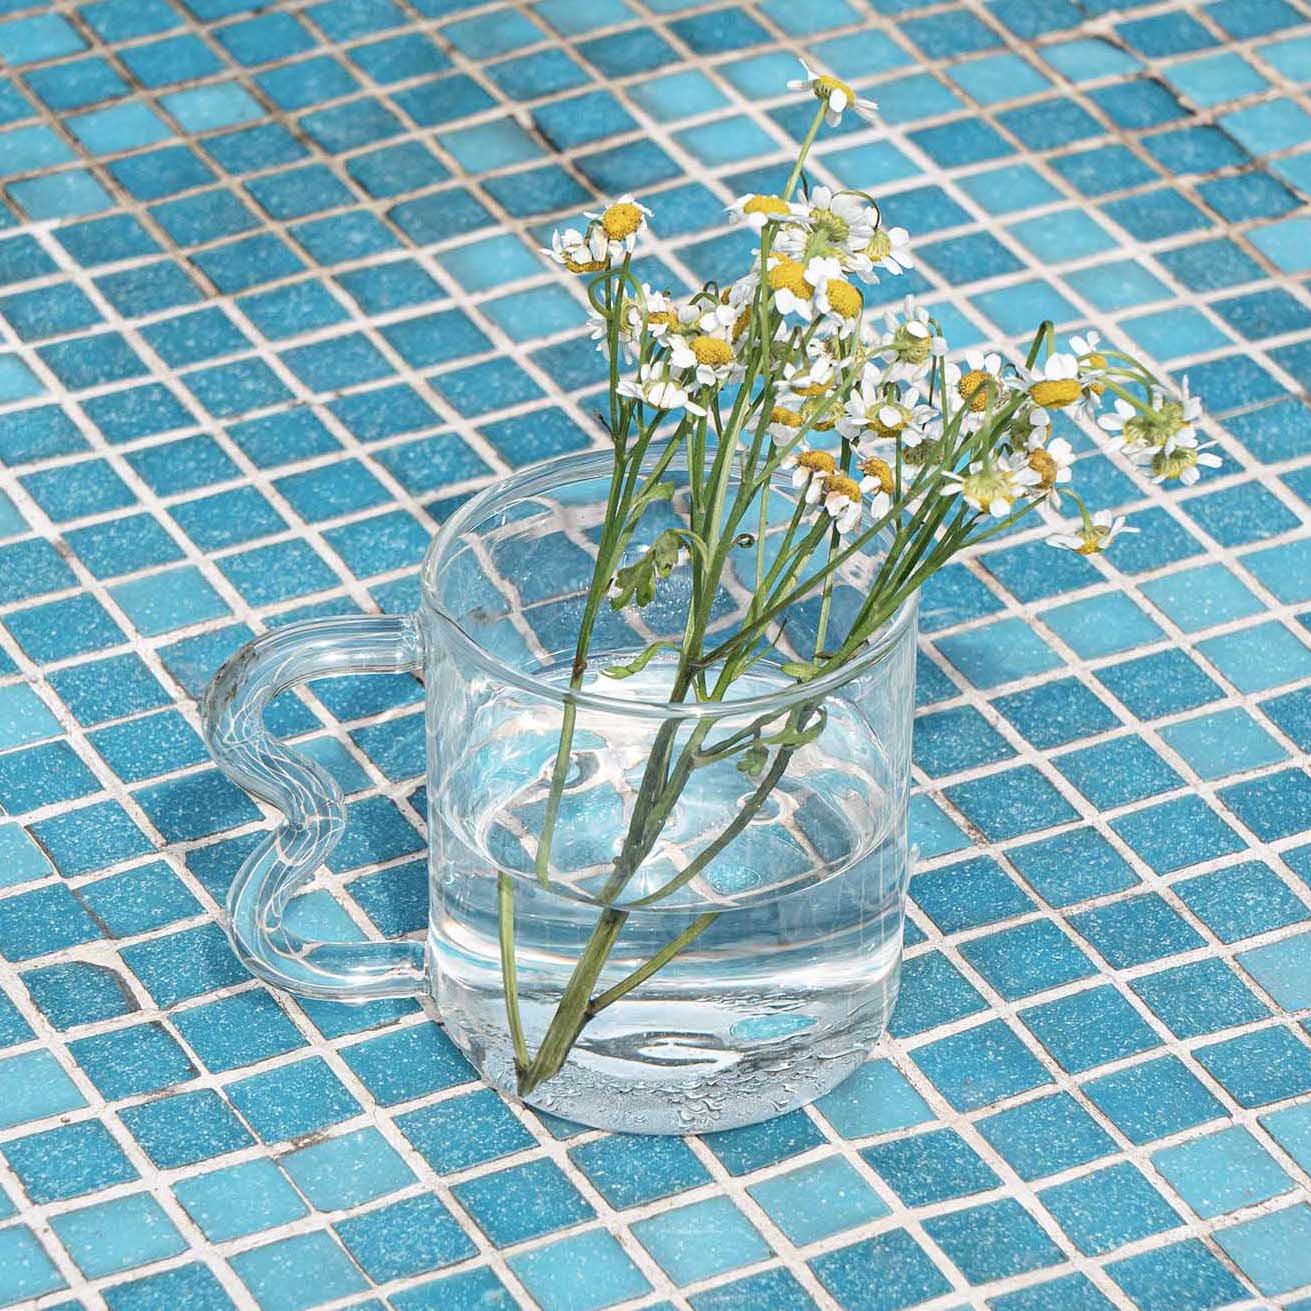 Swirled Handle Cup Transparent Glass shop transparent unique glass cups singapore unniki online shop